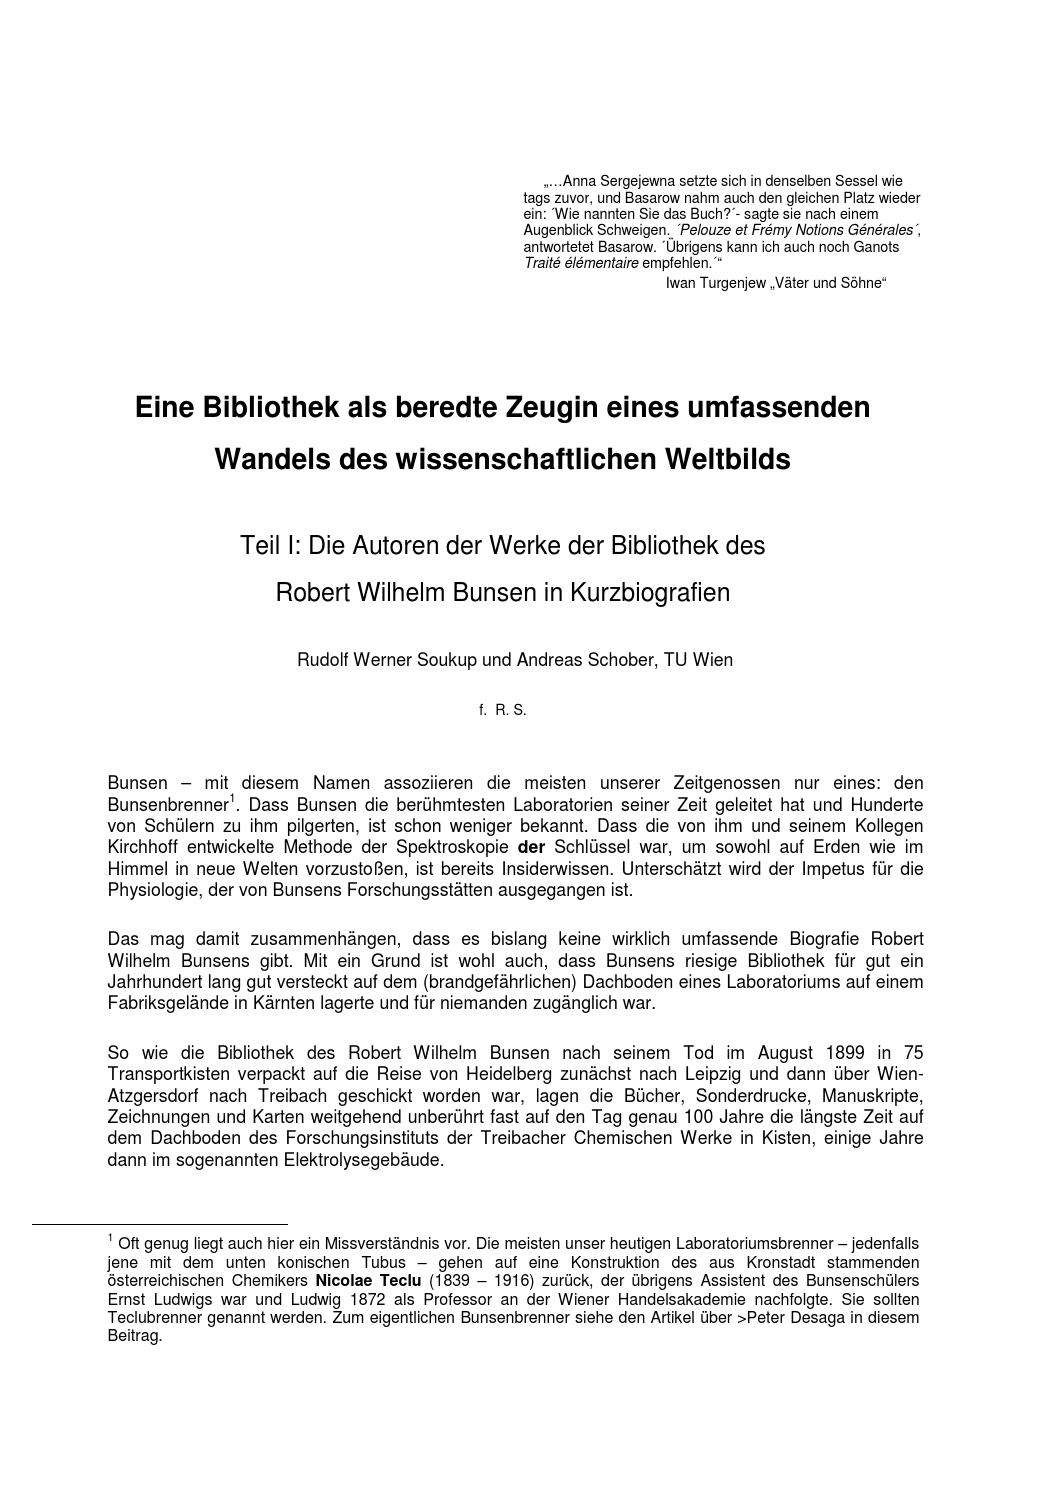 Botanischer Garten Leipzig Schön Autoren Der Bunsenbibliothek Teil 1 by Auer Von Welsbach